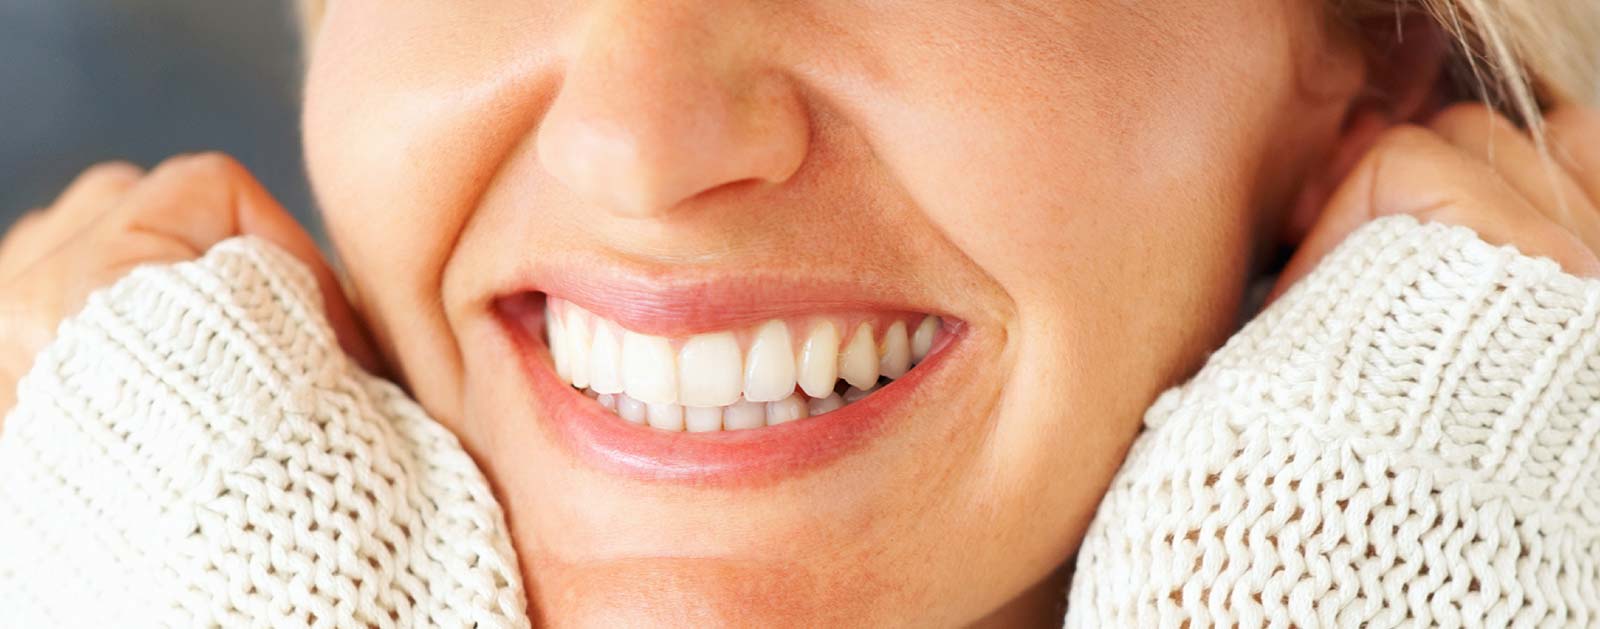 Weißere Zähne durch professionelles Bleaching